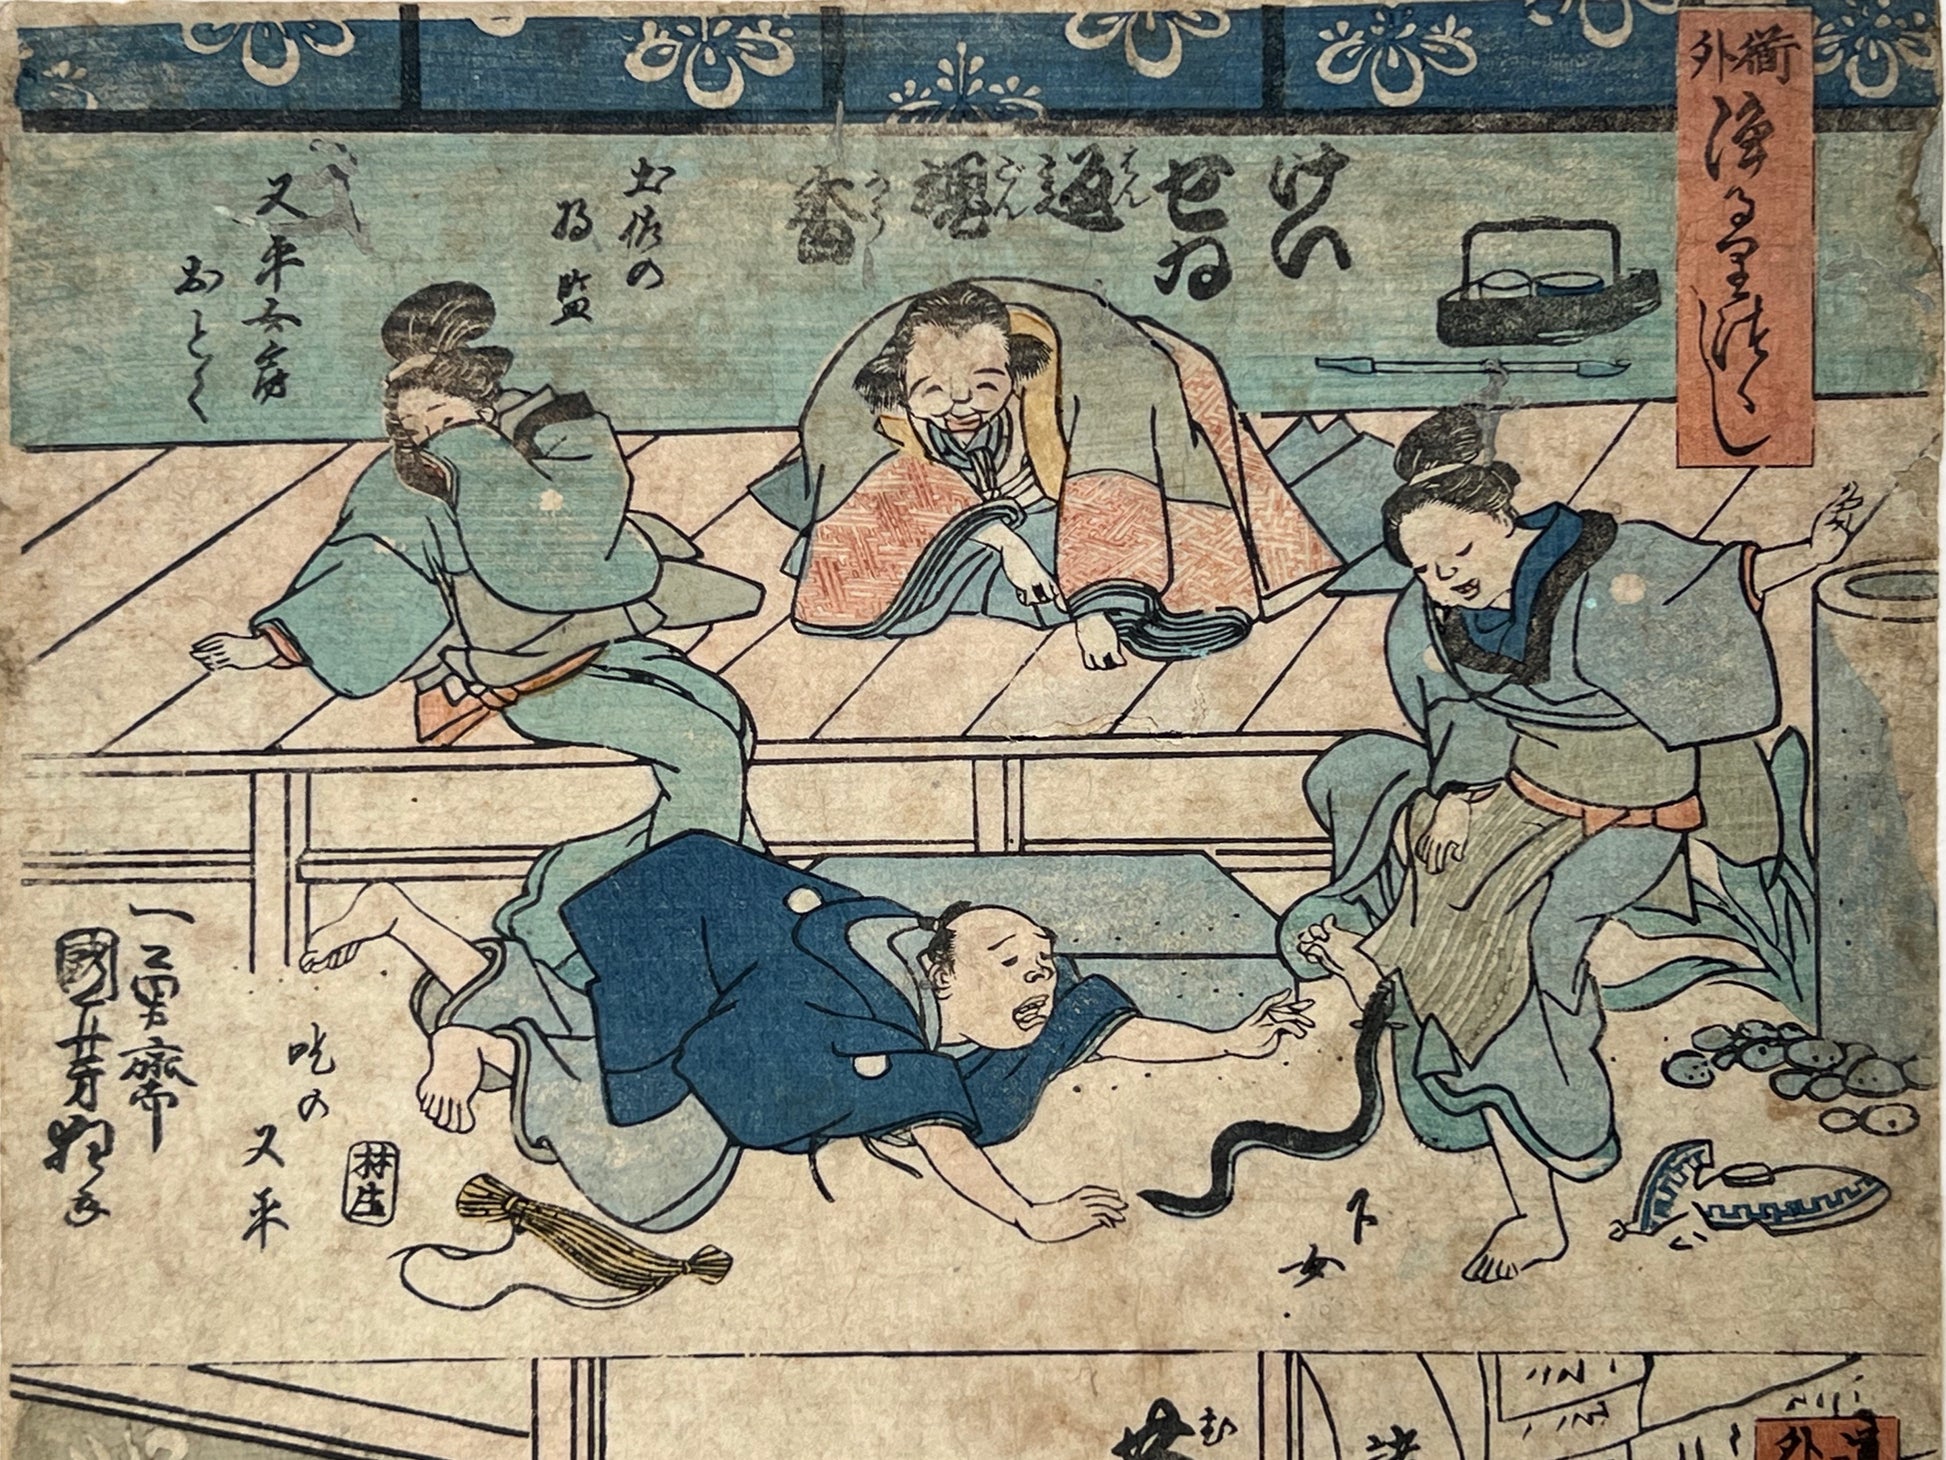 estampe japonaise humoristique , un homme courre après un serpent, une femme effrayée, un homme tire les cheveux d'un autre, des spectateurs rigolent, gros plan sur la scène du serpent